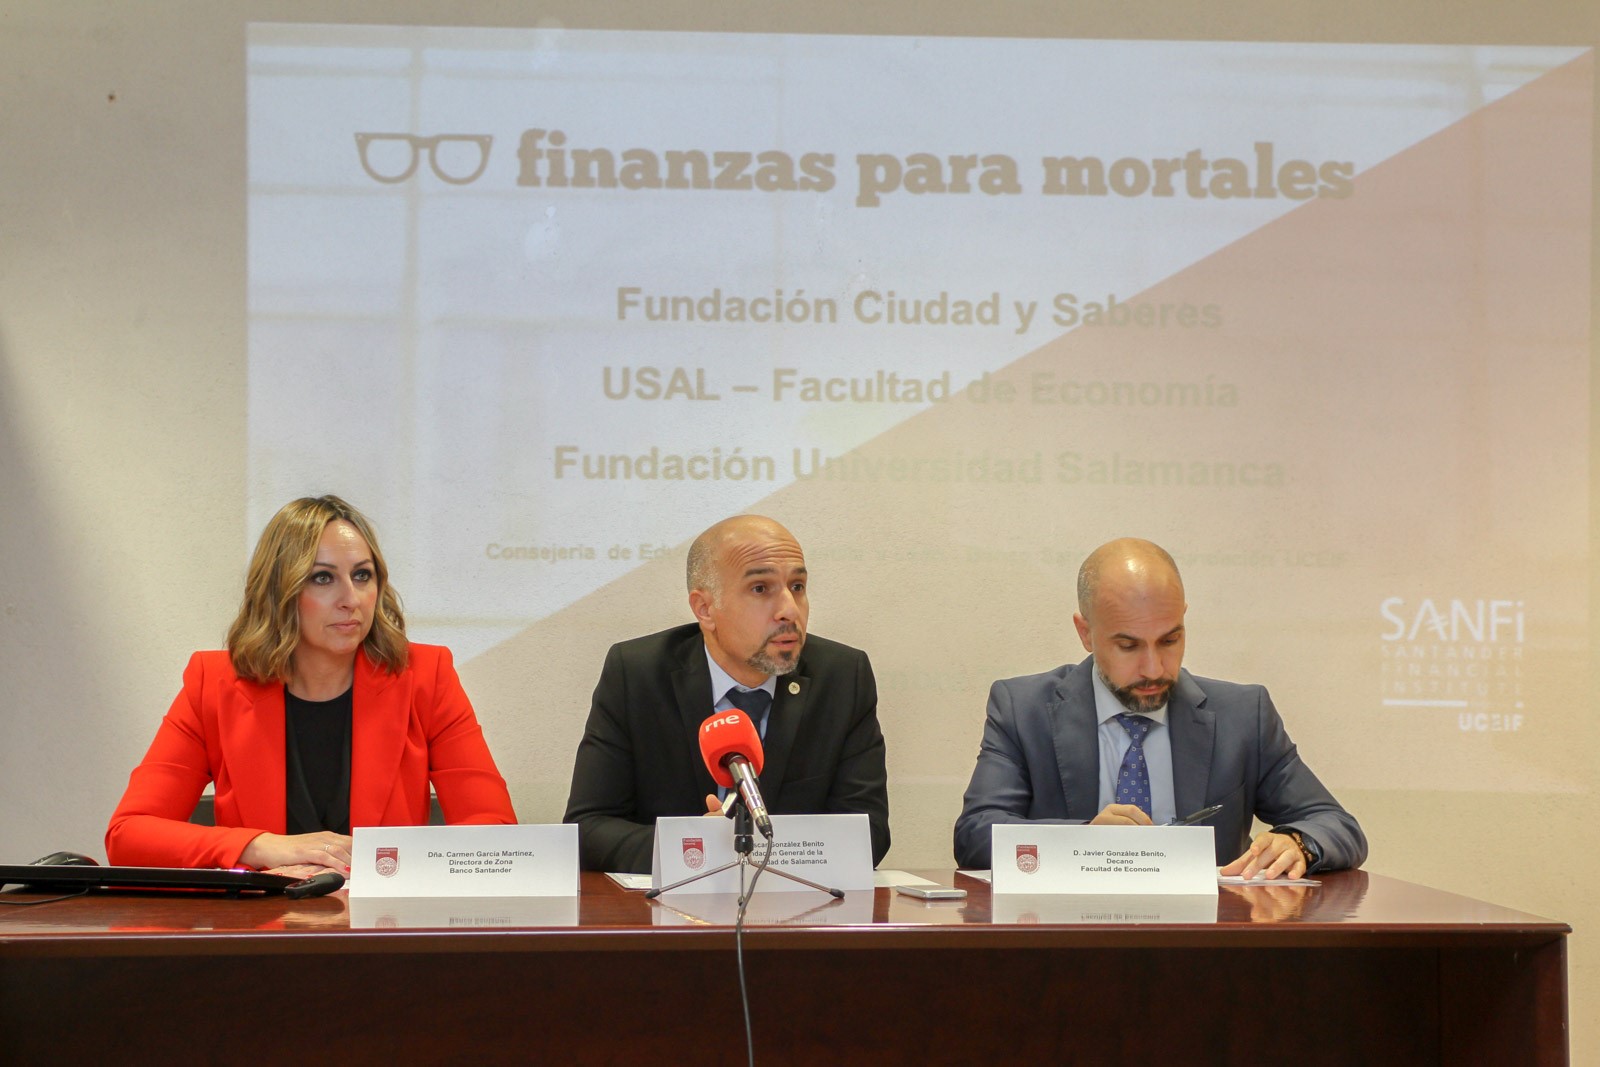 Rueda de prensa: La Facultad de Economía de la USAL acoge una iniciativa pionera en Educación Financiera